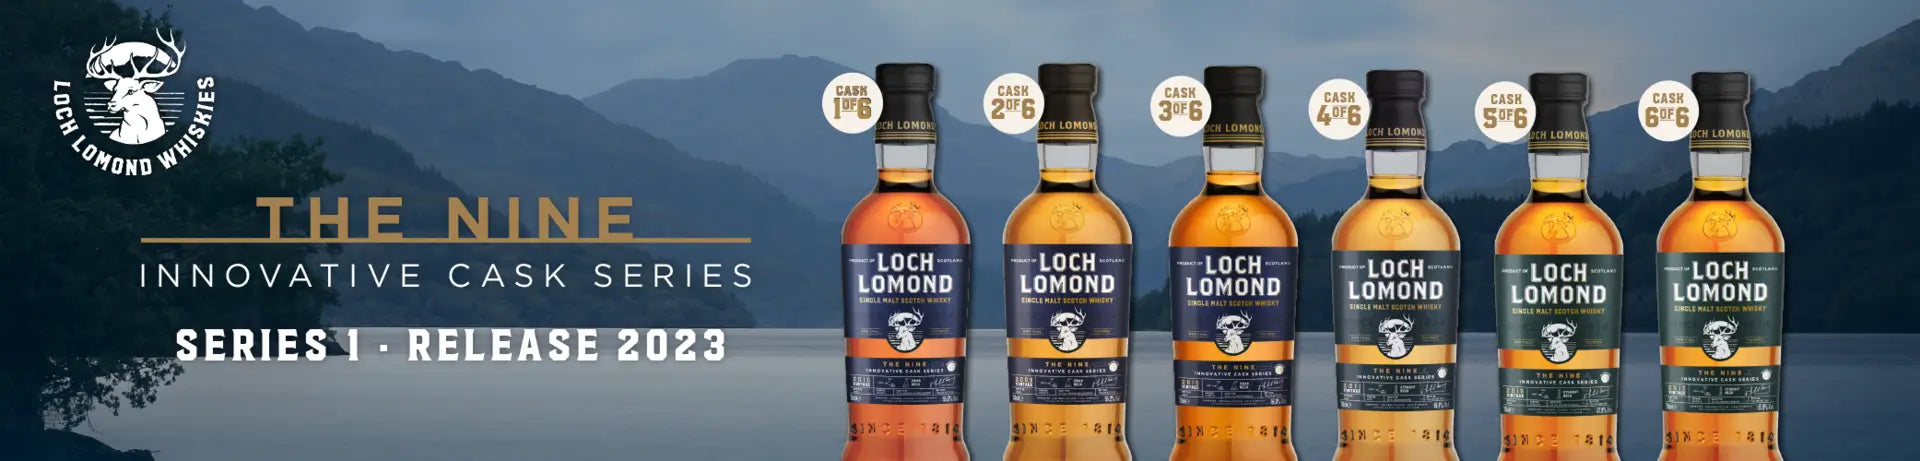 Loch Lomond The Nine Highland Single Cask Whisky